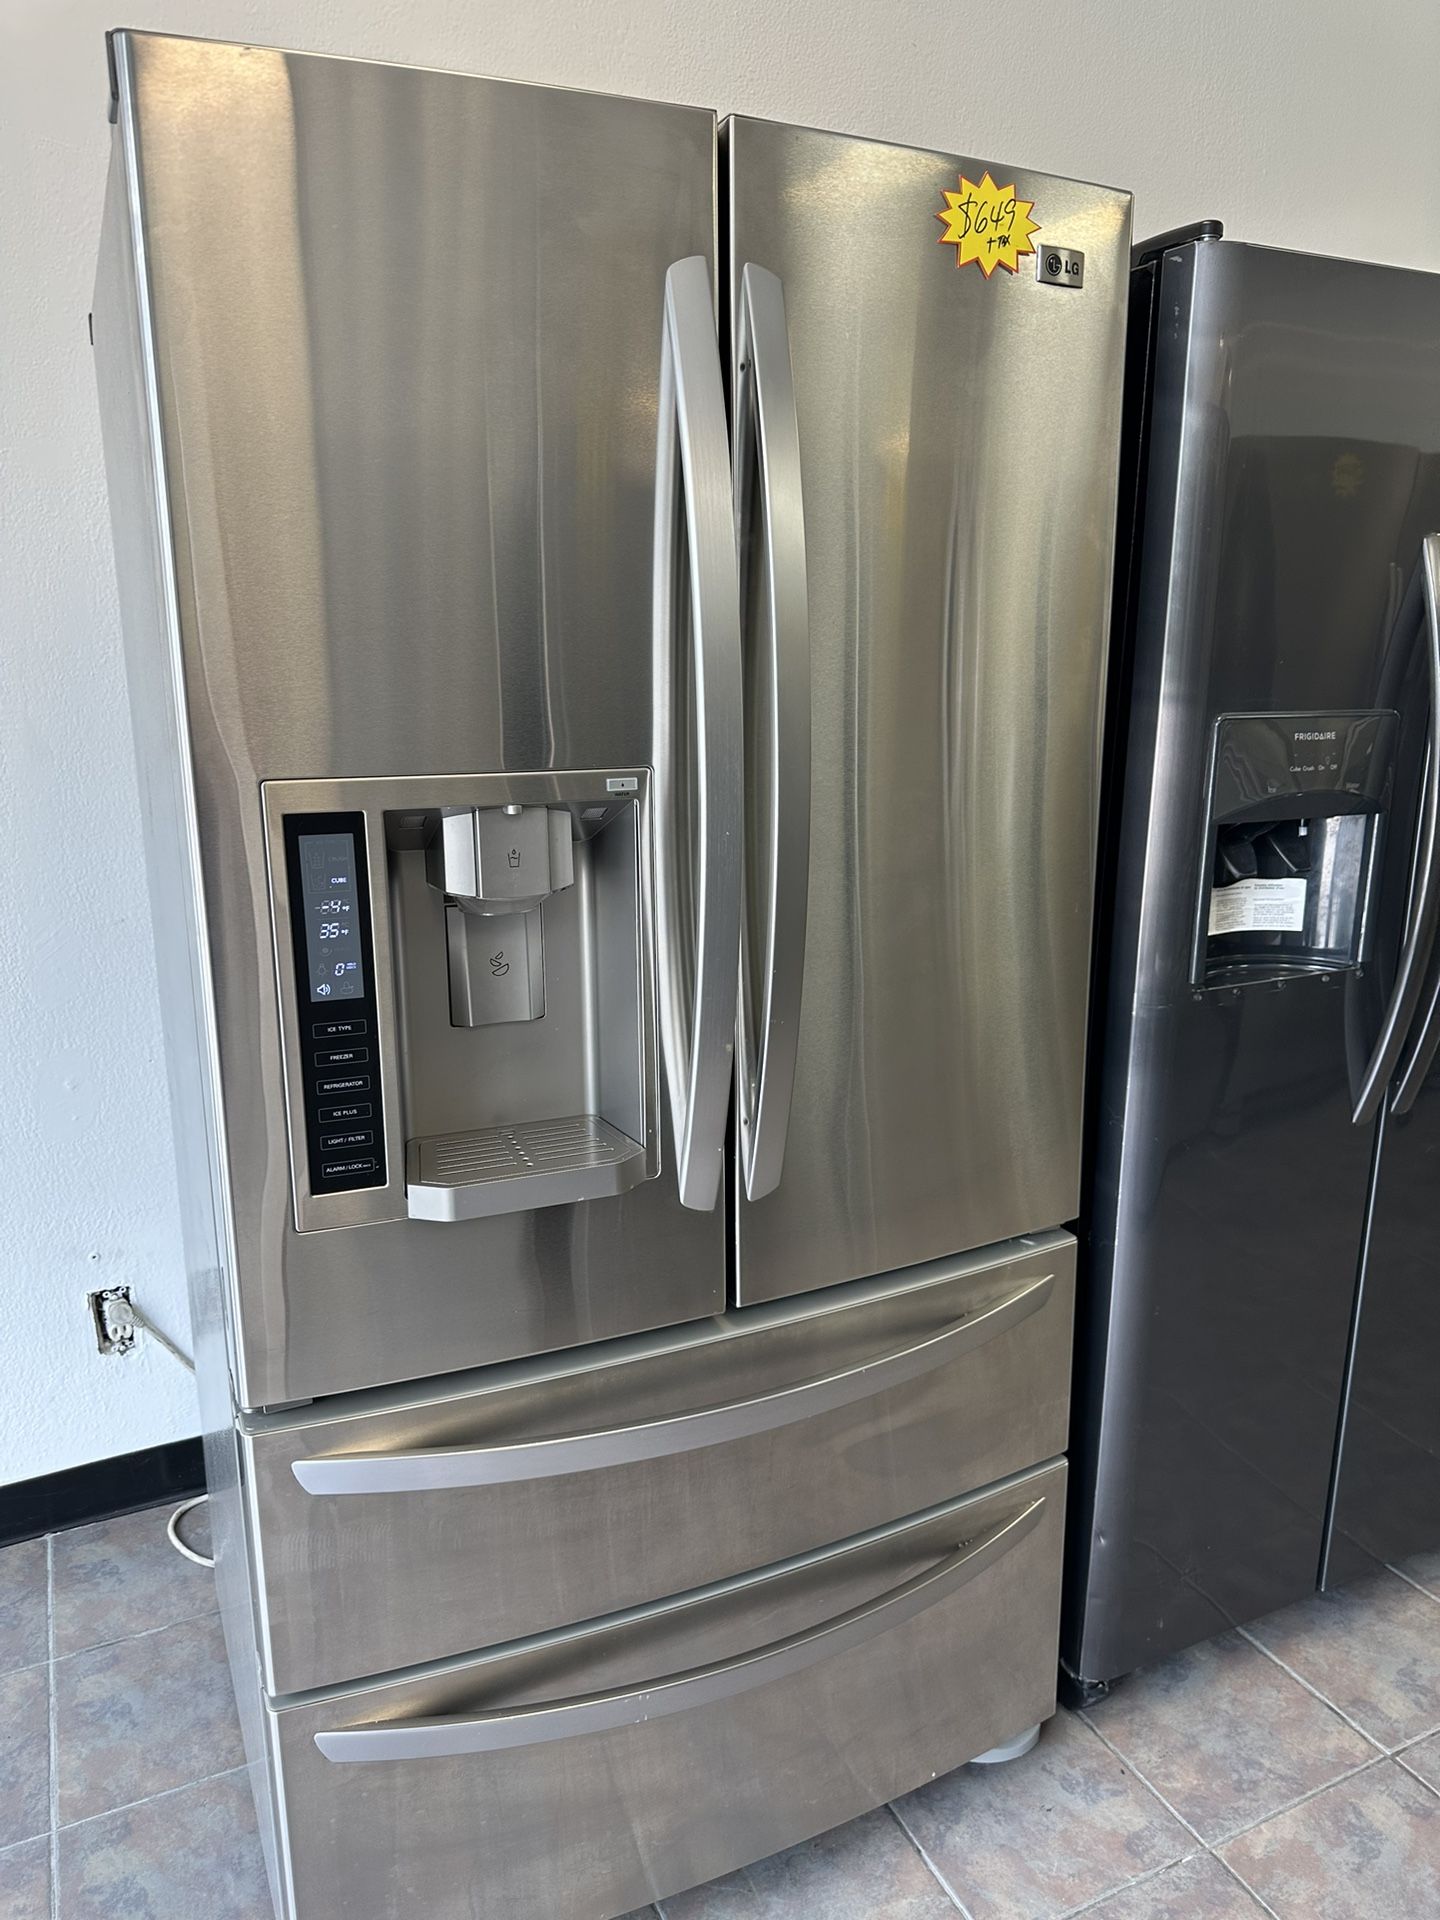 4 Doors Kenmore Refrigerator With Warranty 